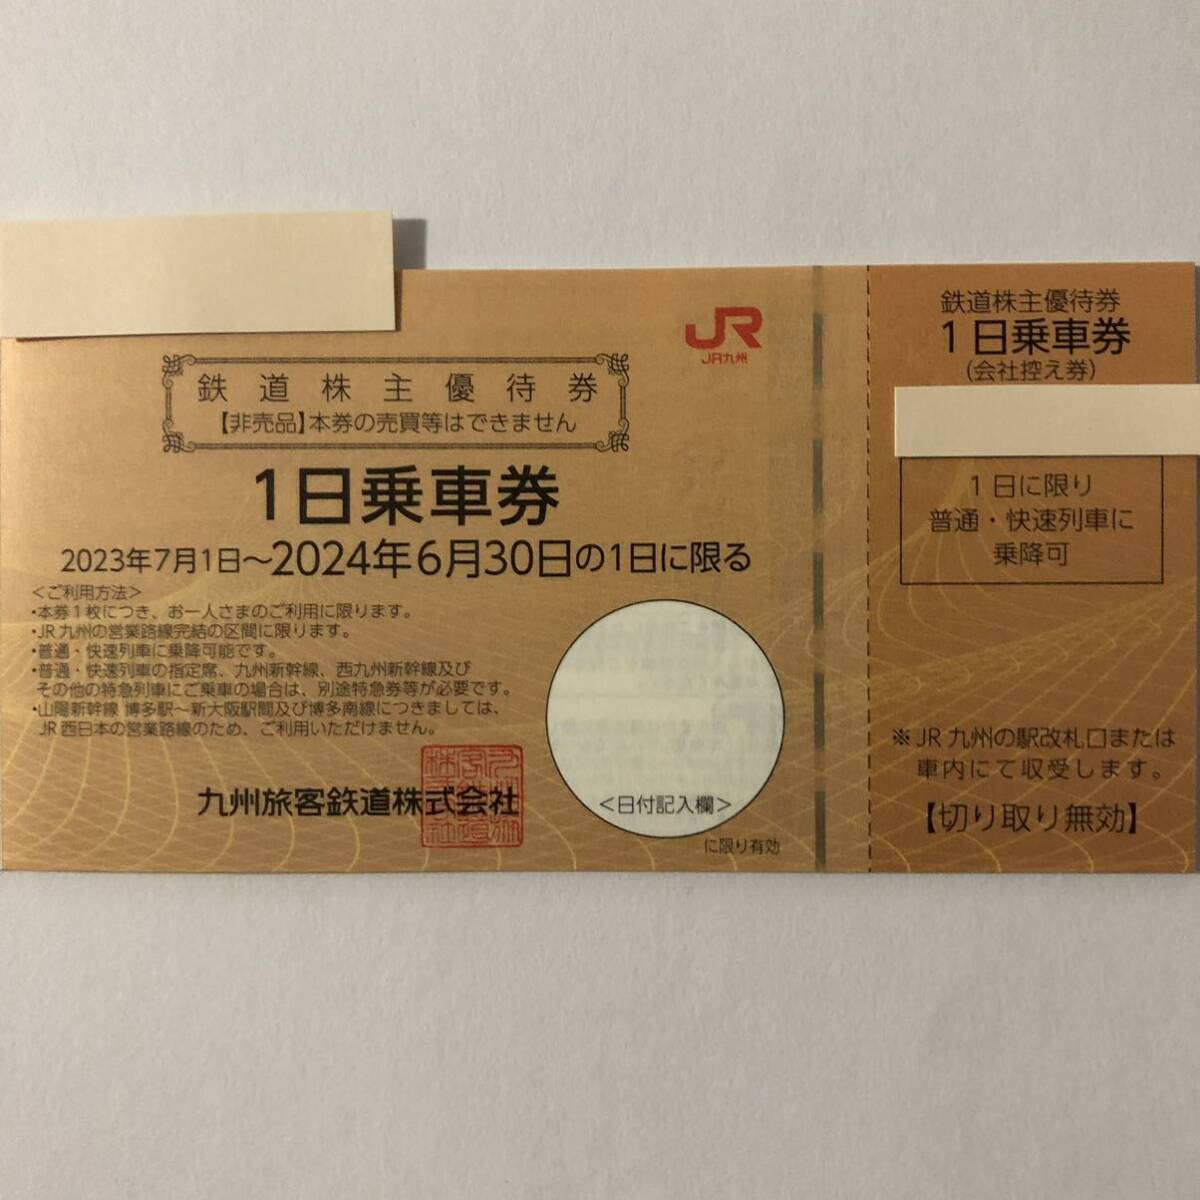 * prompt decision 0JR Kyushu. stockholder complimentary ticket 0 railroad stockholder complimentary ticket 0 amount 1~9*